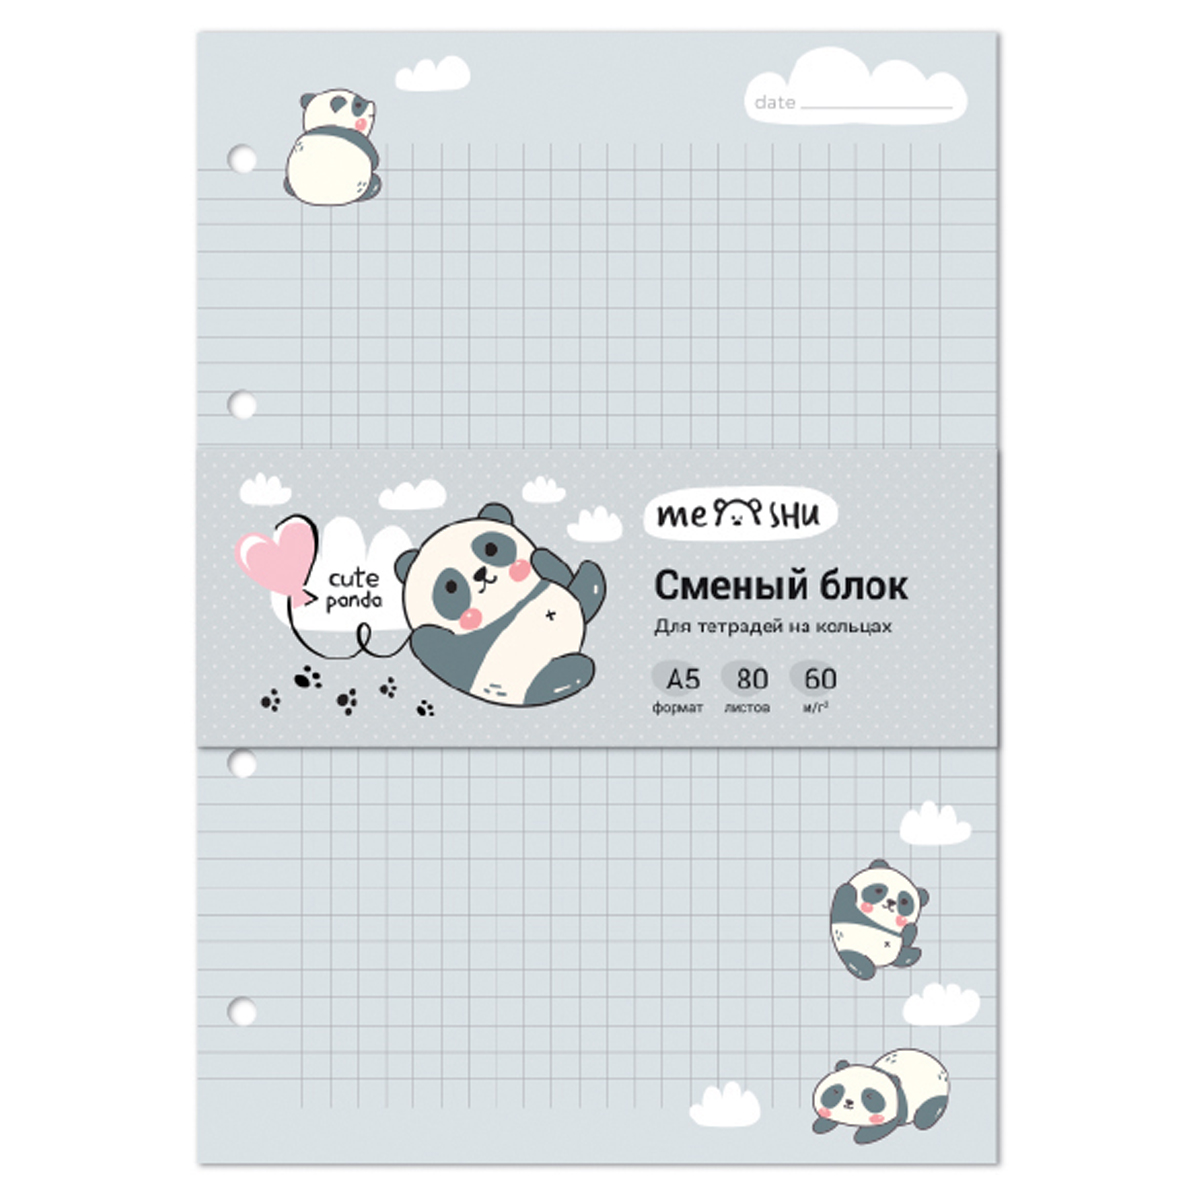     MESHU Cute panda 5 80 ,  /